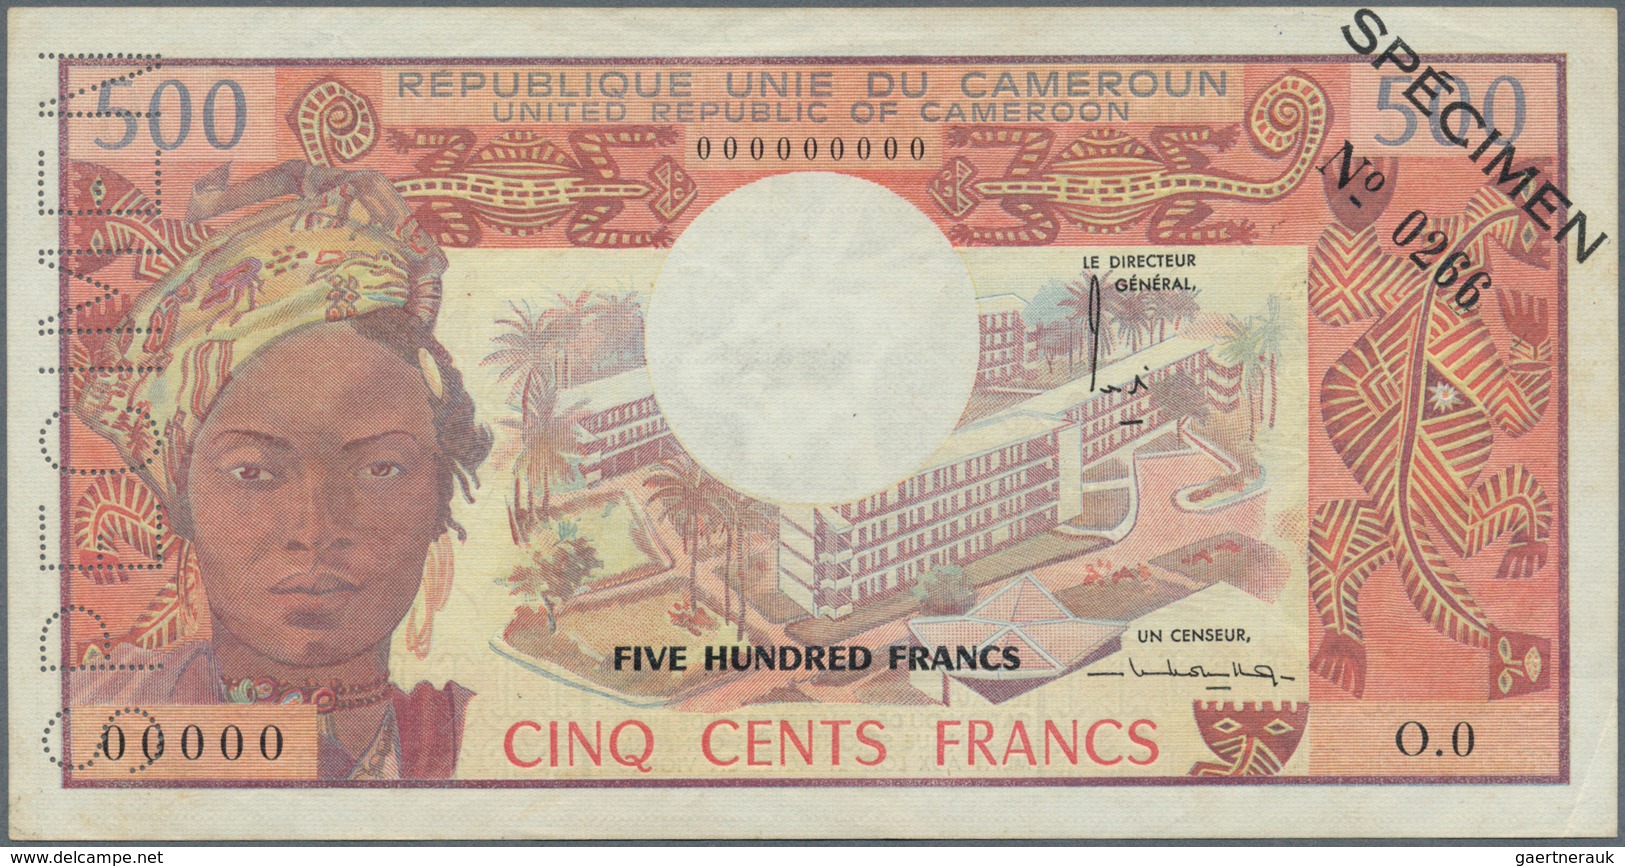 Cameroon / Kamerun: Banque Des États De L'Afrique Centrale - République Unie Du Cameroun 500 Francs - Cameroun